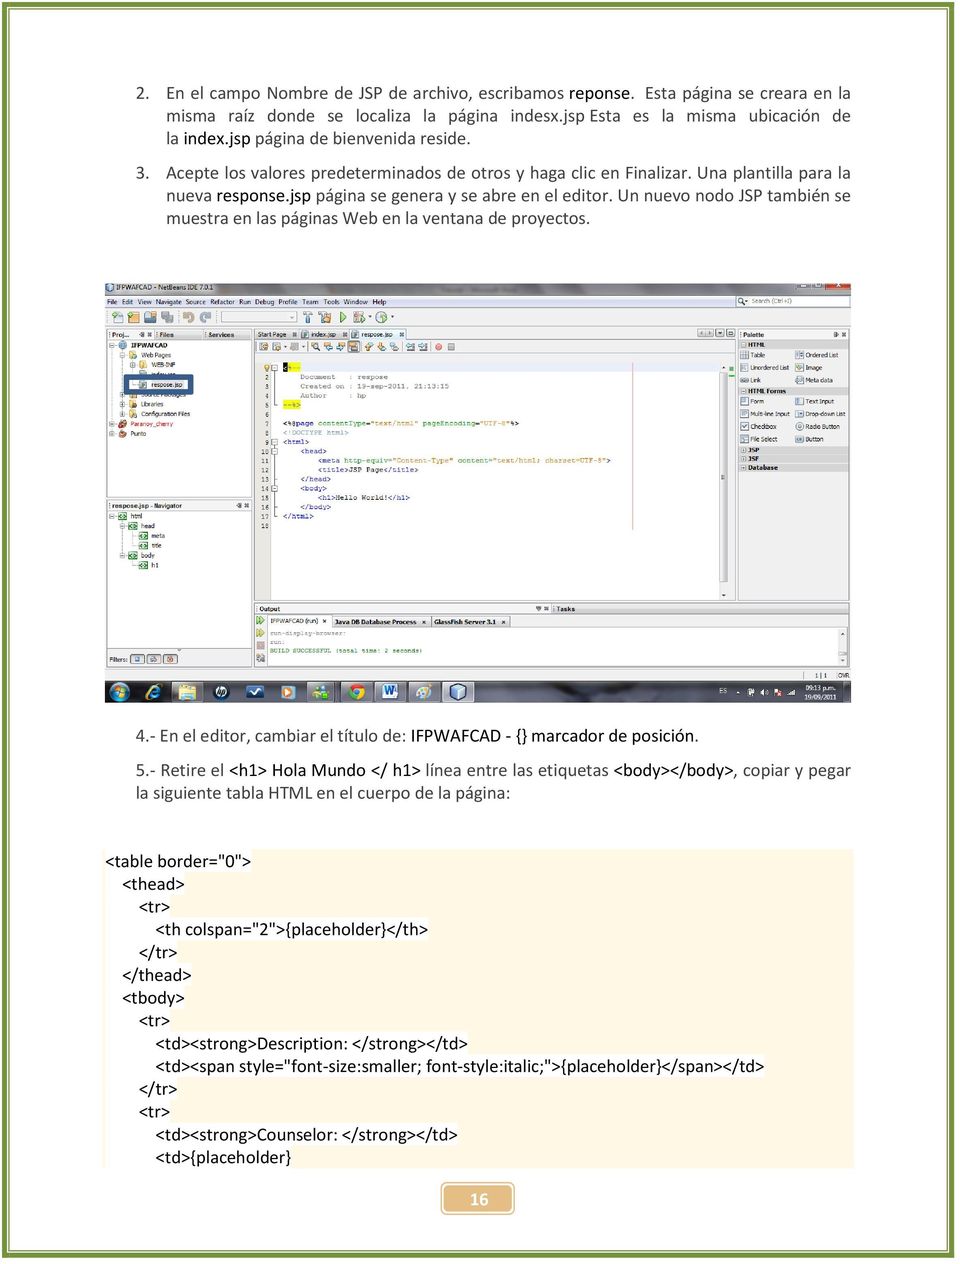 Un nuevo nodo JSP también se muestra en las páginas Web en la ventana de proyectos. 4.- En el editor, cambiar el título de: IFPWAFCAD - {} marcador de posición. 5.